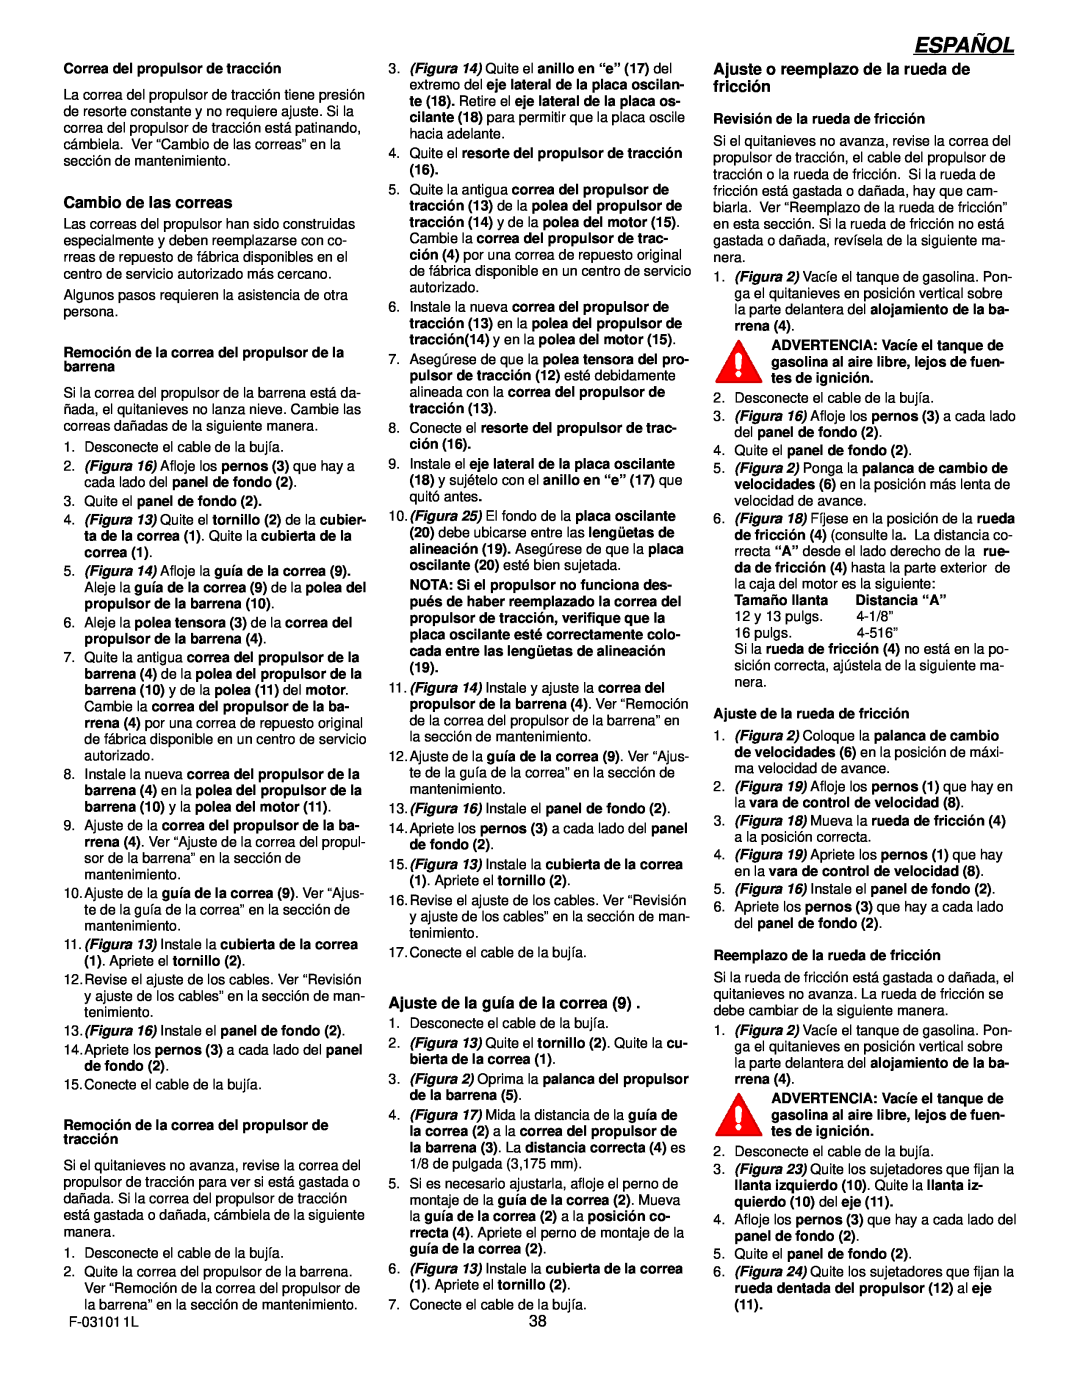 Murray 624504x4C manual Español, Cambio de las correas, Ajuste de la guía de la correa 